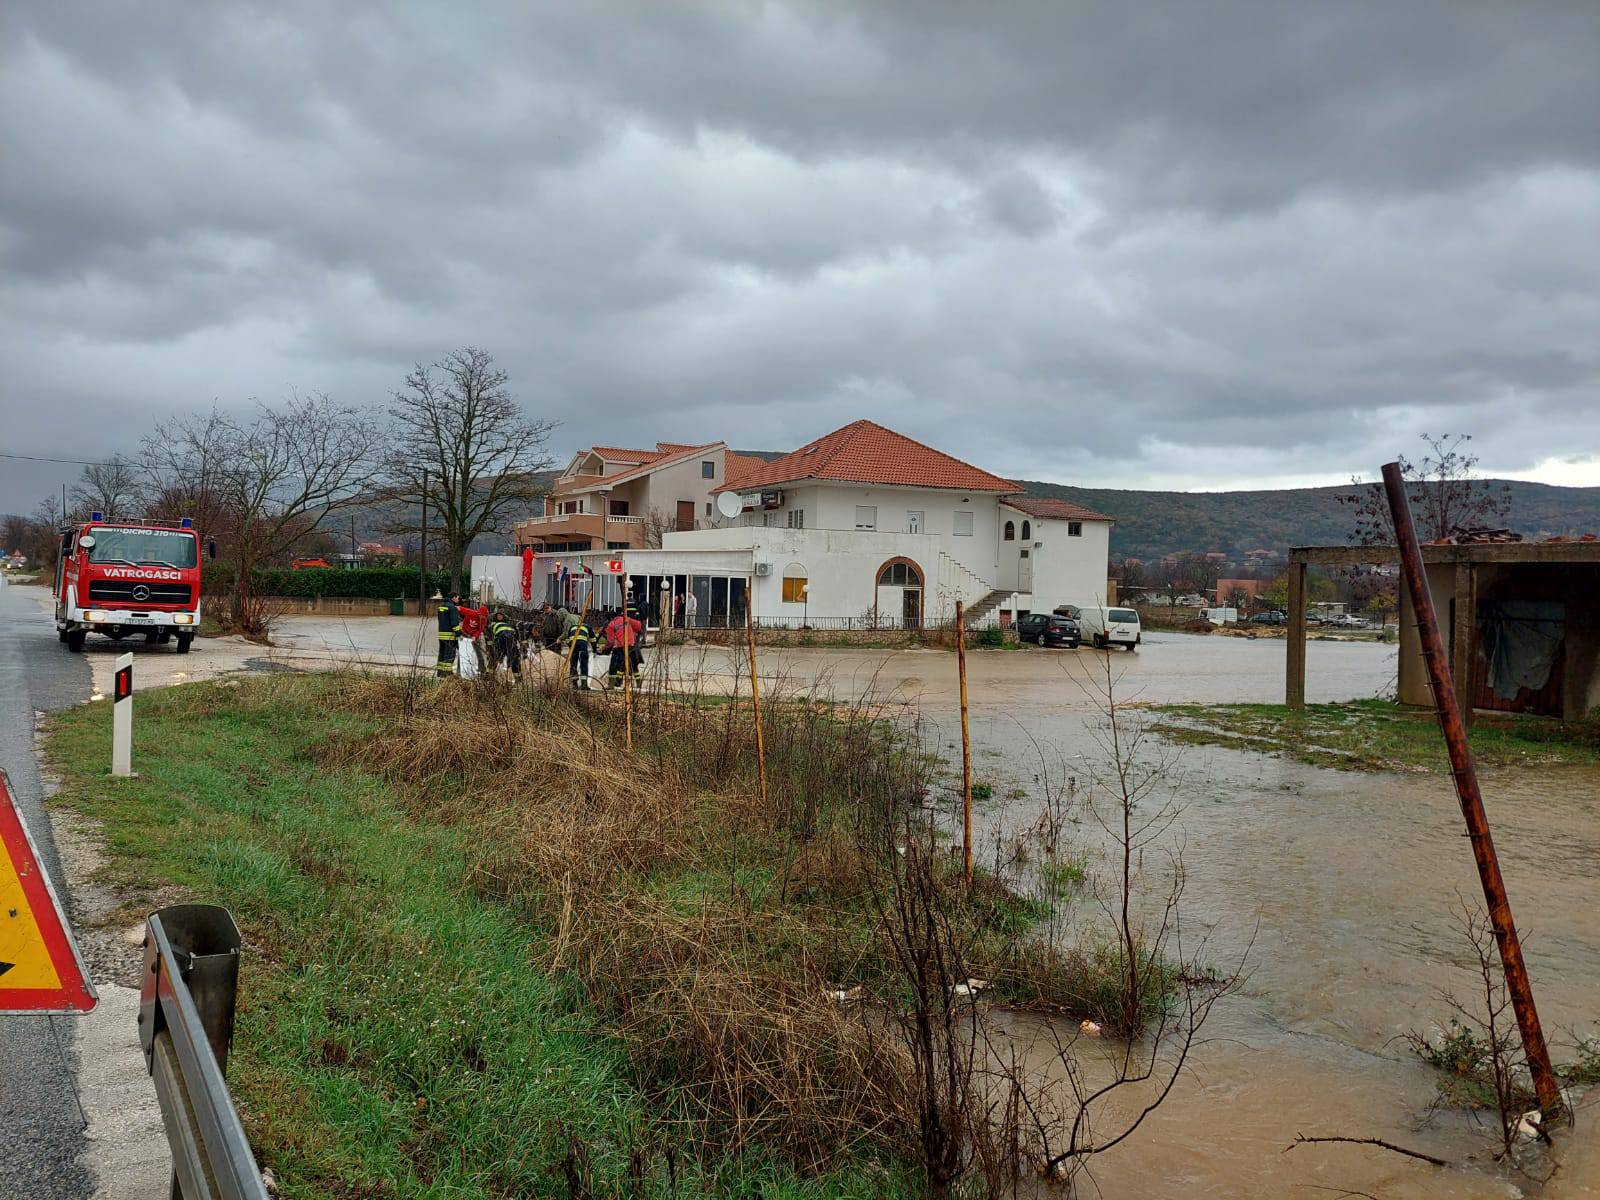 Dicmo pod vodom, poplavljene kuće: 'Ovo nisam doživio otkad znam za sebe. Upozoravali smo'